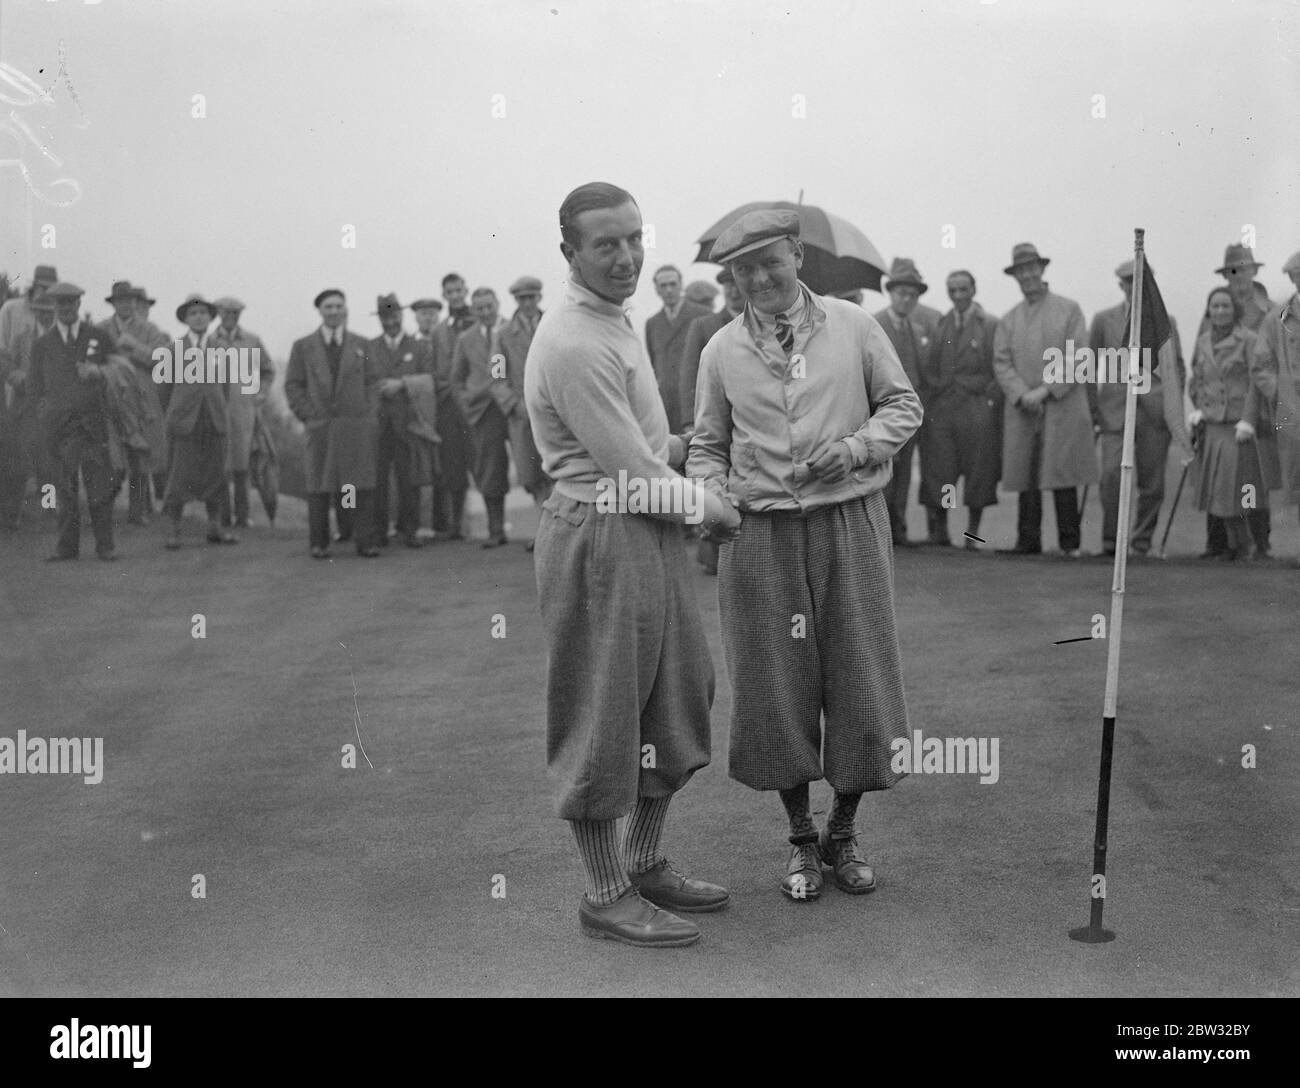 Baumwolle gewinnt £1040 Golf Match in der professionellen Meisterschaft. Henry Cotton gewann die News of the World Professional Golf Championship mit seinem Preis von £1040, als er Perry im Finale des Spiels auf dem Moor Park Course , Rickmansworth besiegt. Baumwolle und Perry schütteln die Hände nach ihrem Spiel. 23. September 1932 Stockfoto